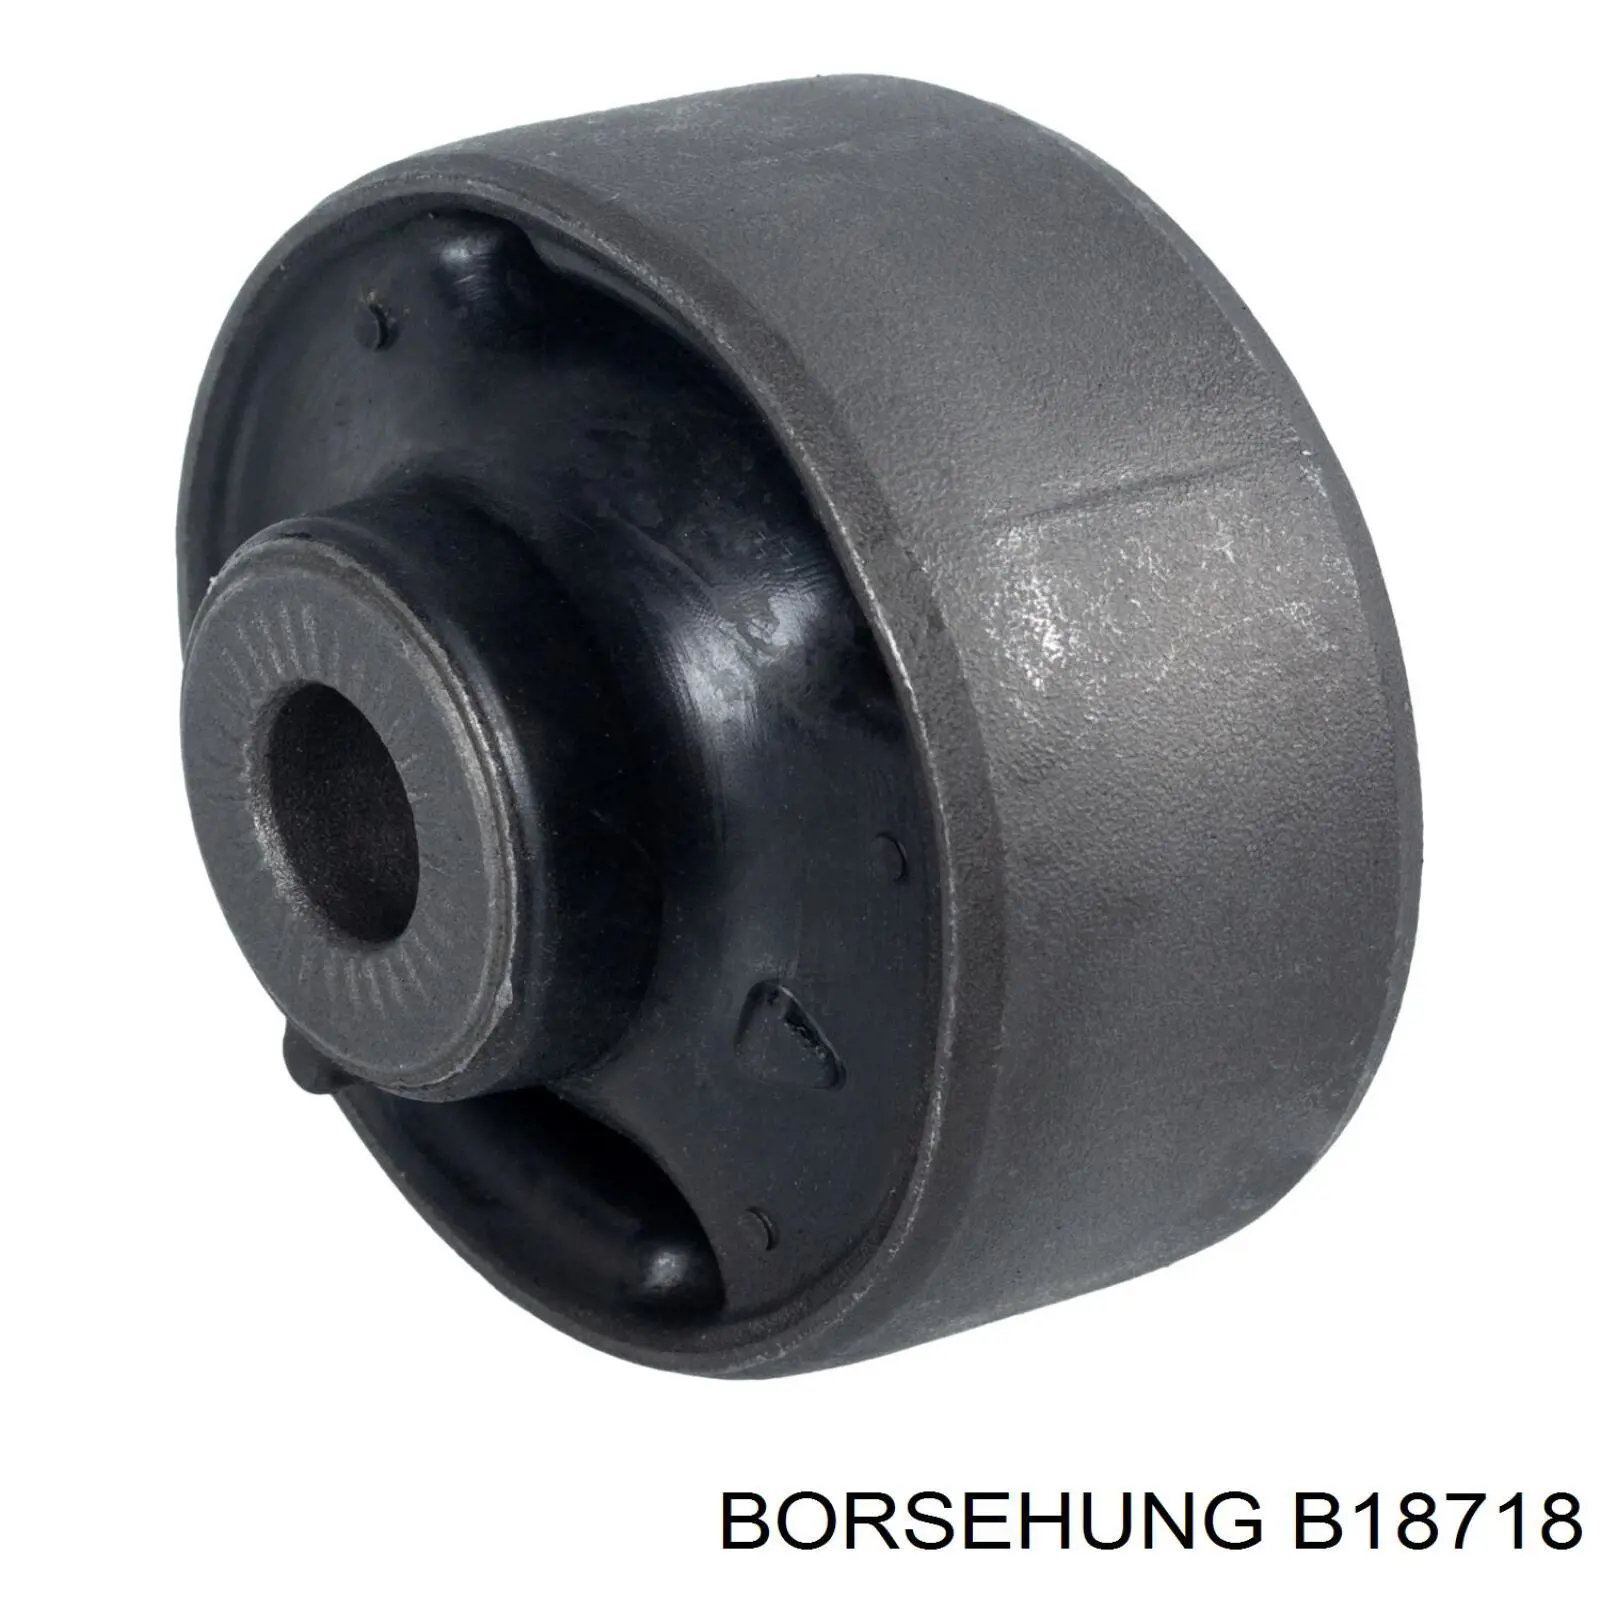 B18718 Borsehung silentblock de suspensión delantero inferior